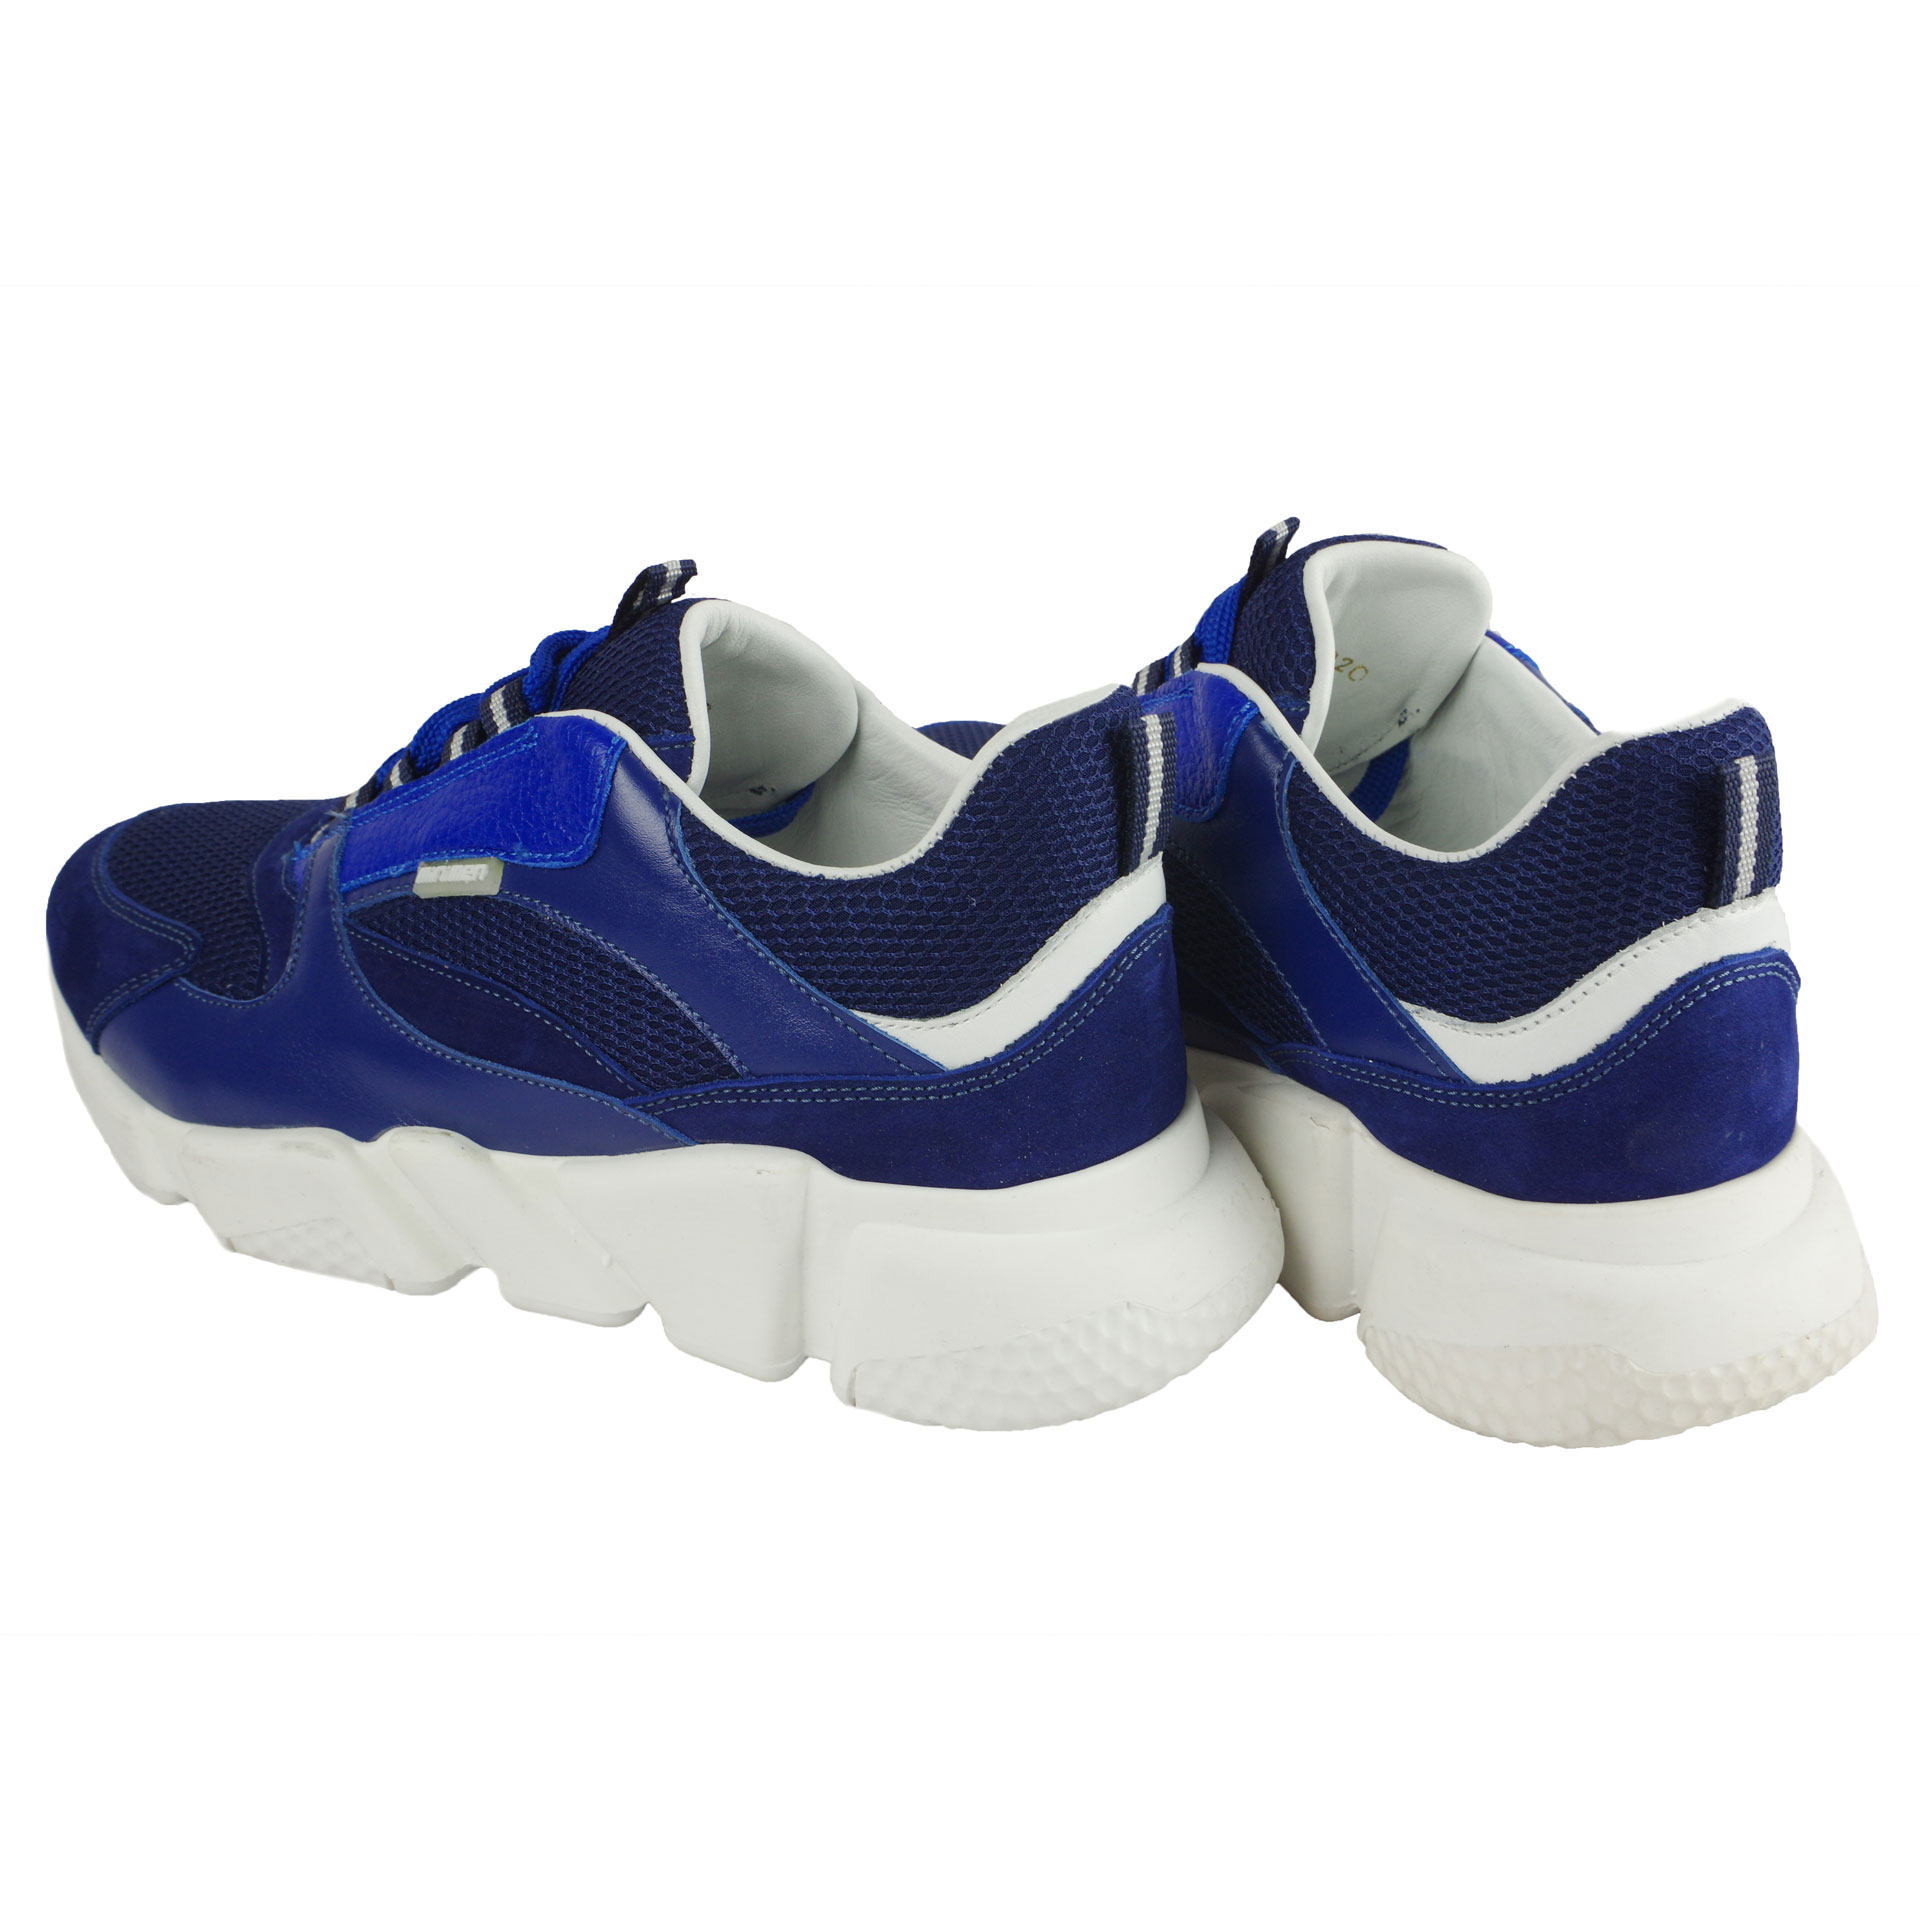 Кросівки для підлітків (2053) для хлопчика, матеріал Натуральна шкіра, Синій колір, 37-40 розміри – Sole Kids. Фото 2